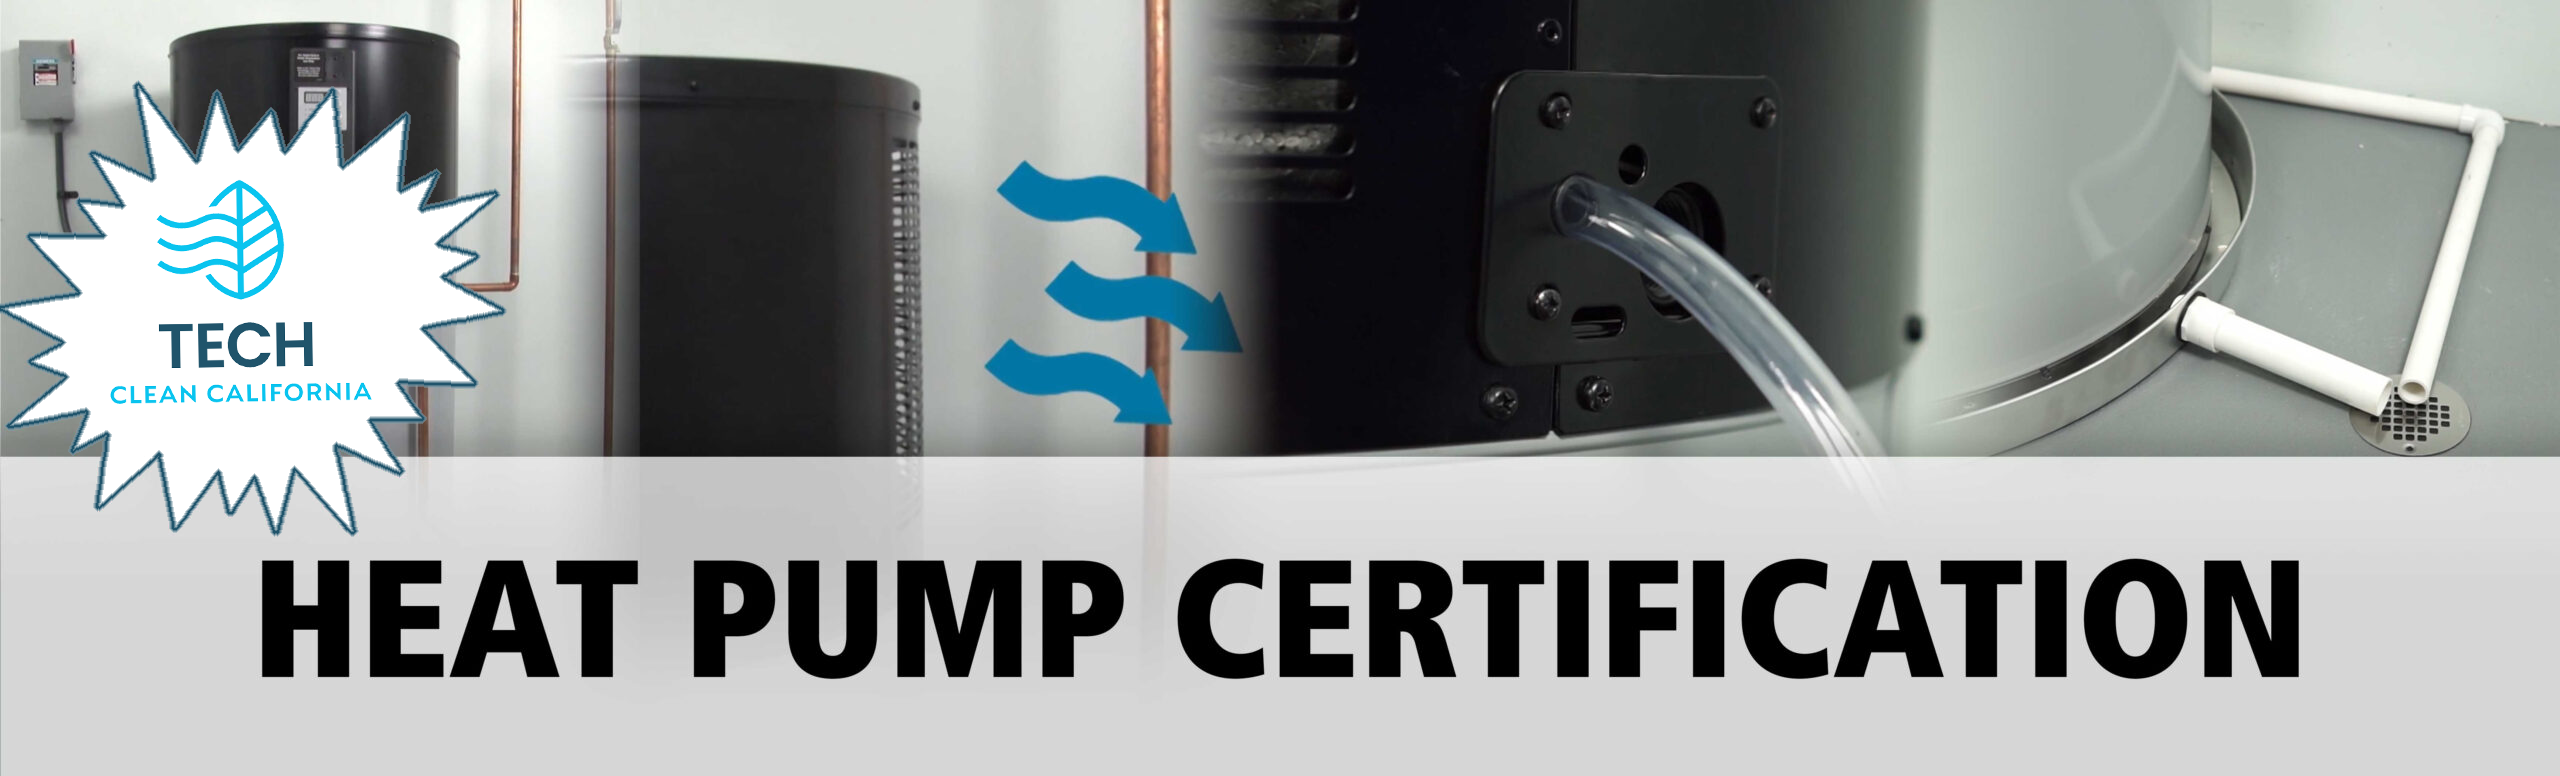 Online-Certification-Banner Heat Pump Certification TECH_Clean_California